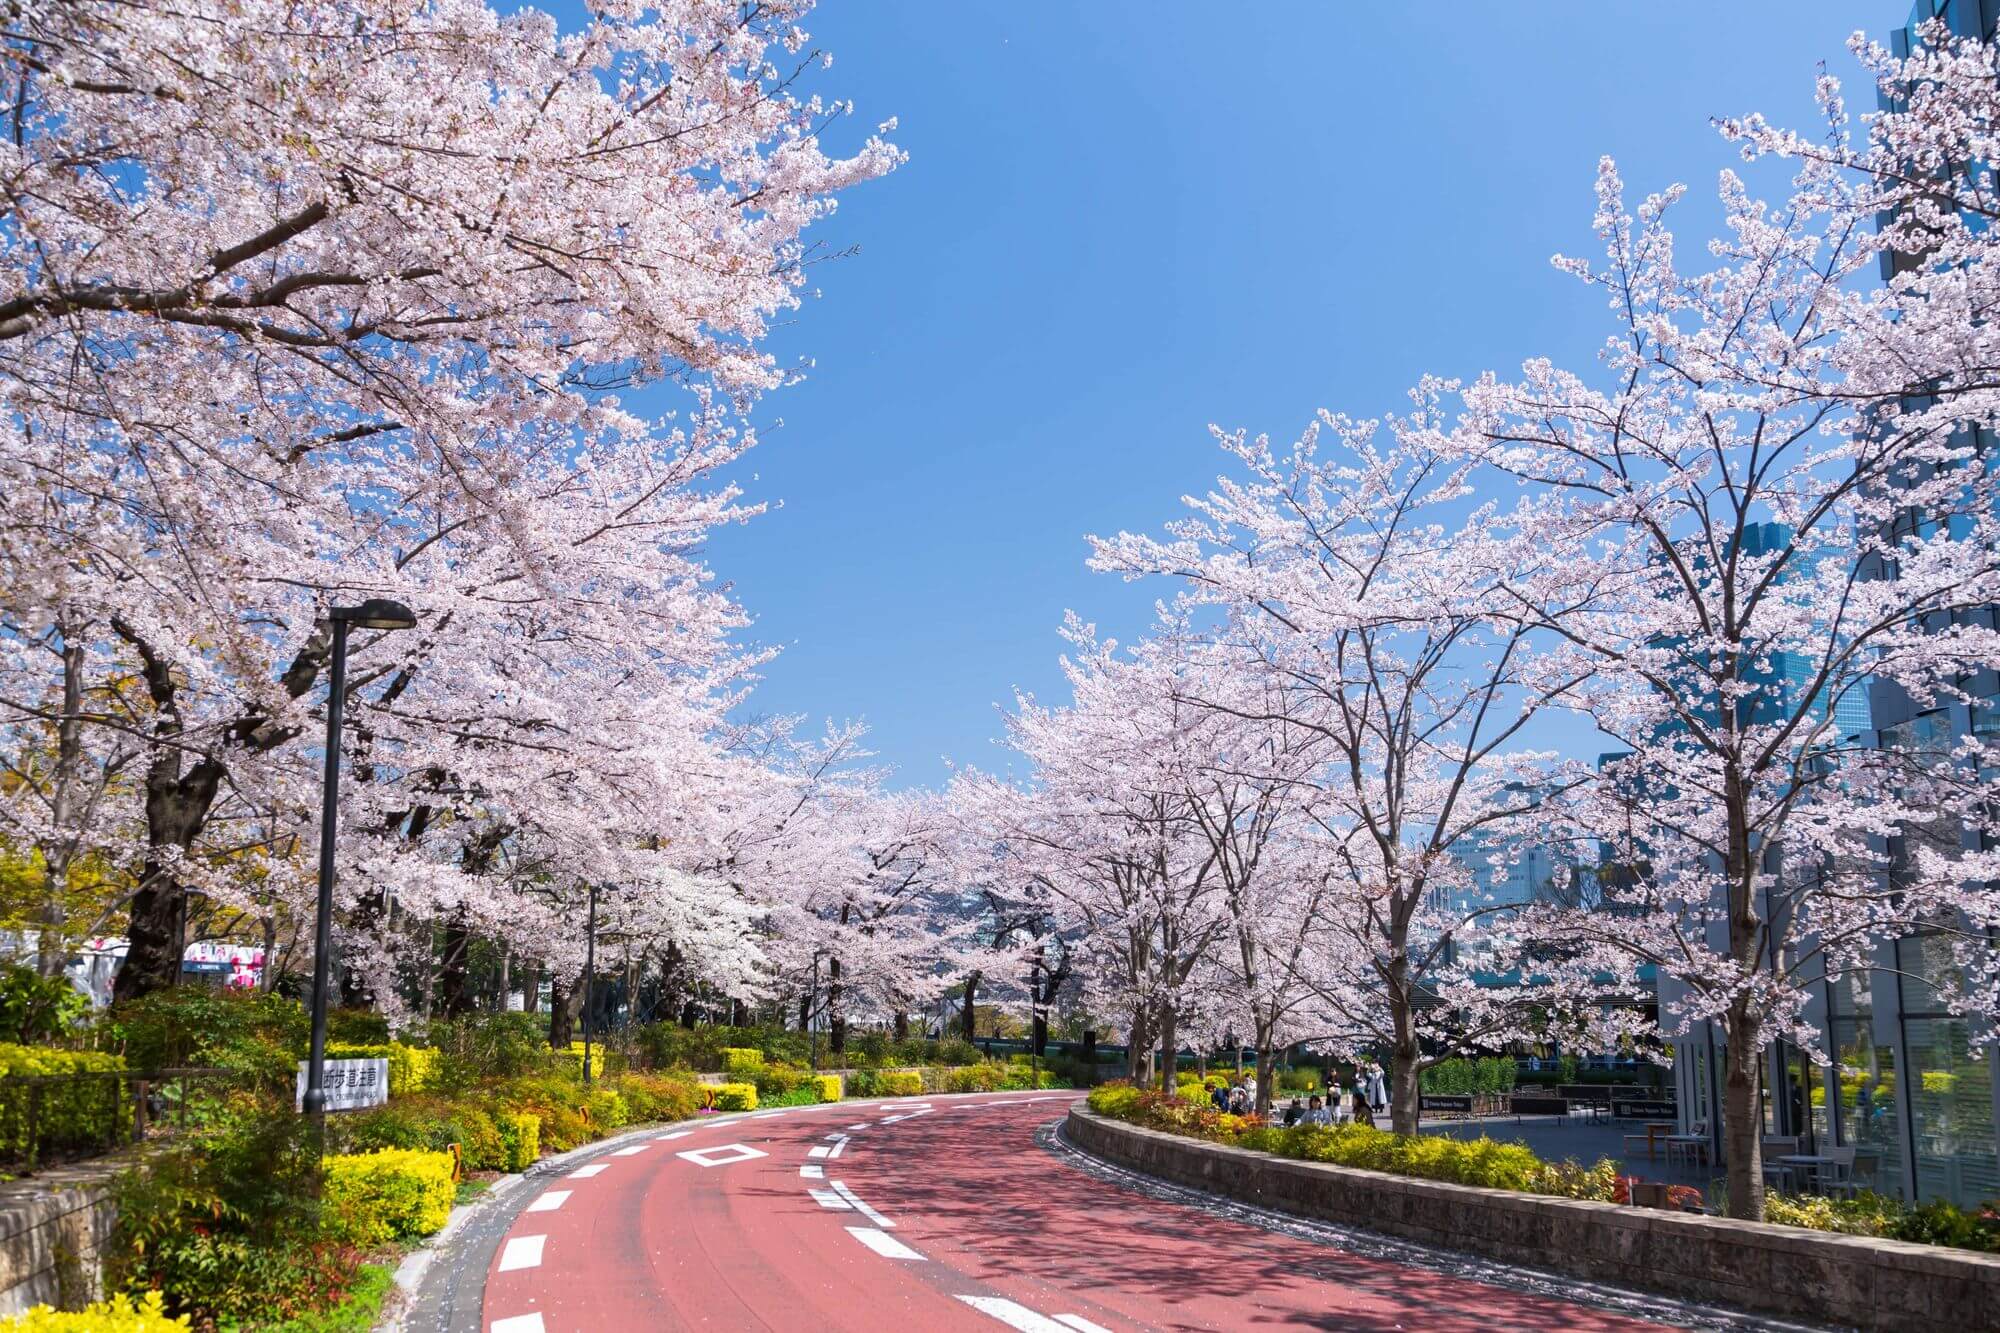 東京ミッドタウン 桜 イベント Sakura event MIDTOWN BLOSSOM 2020 4